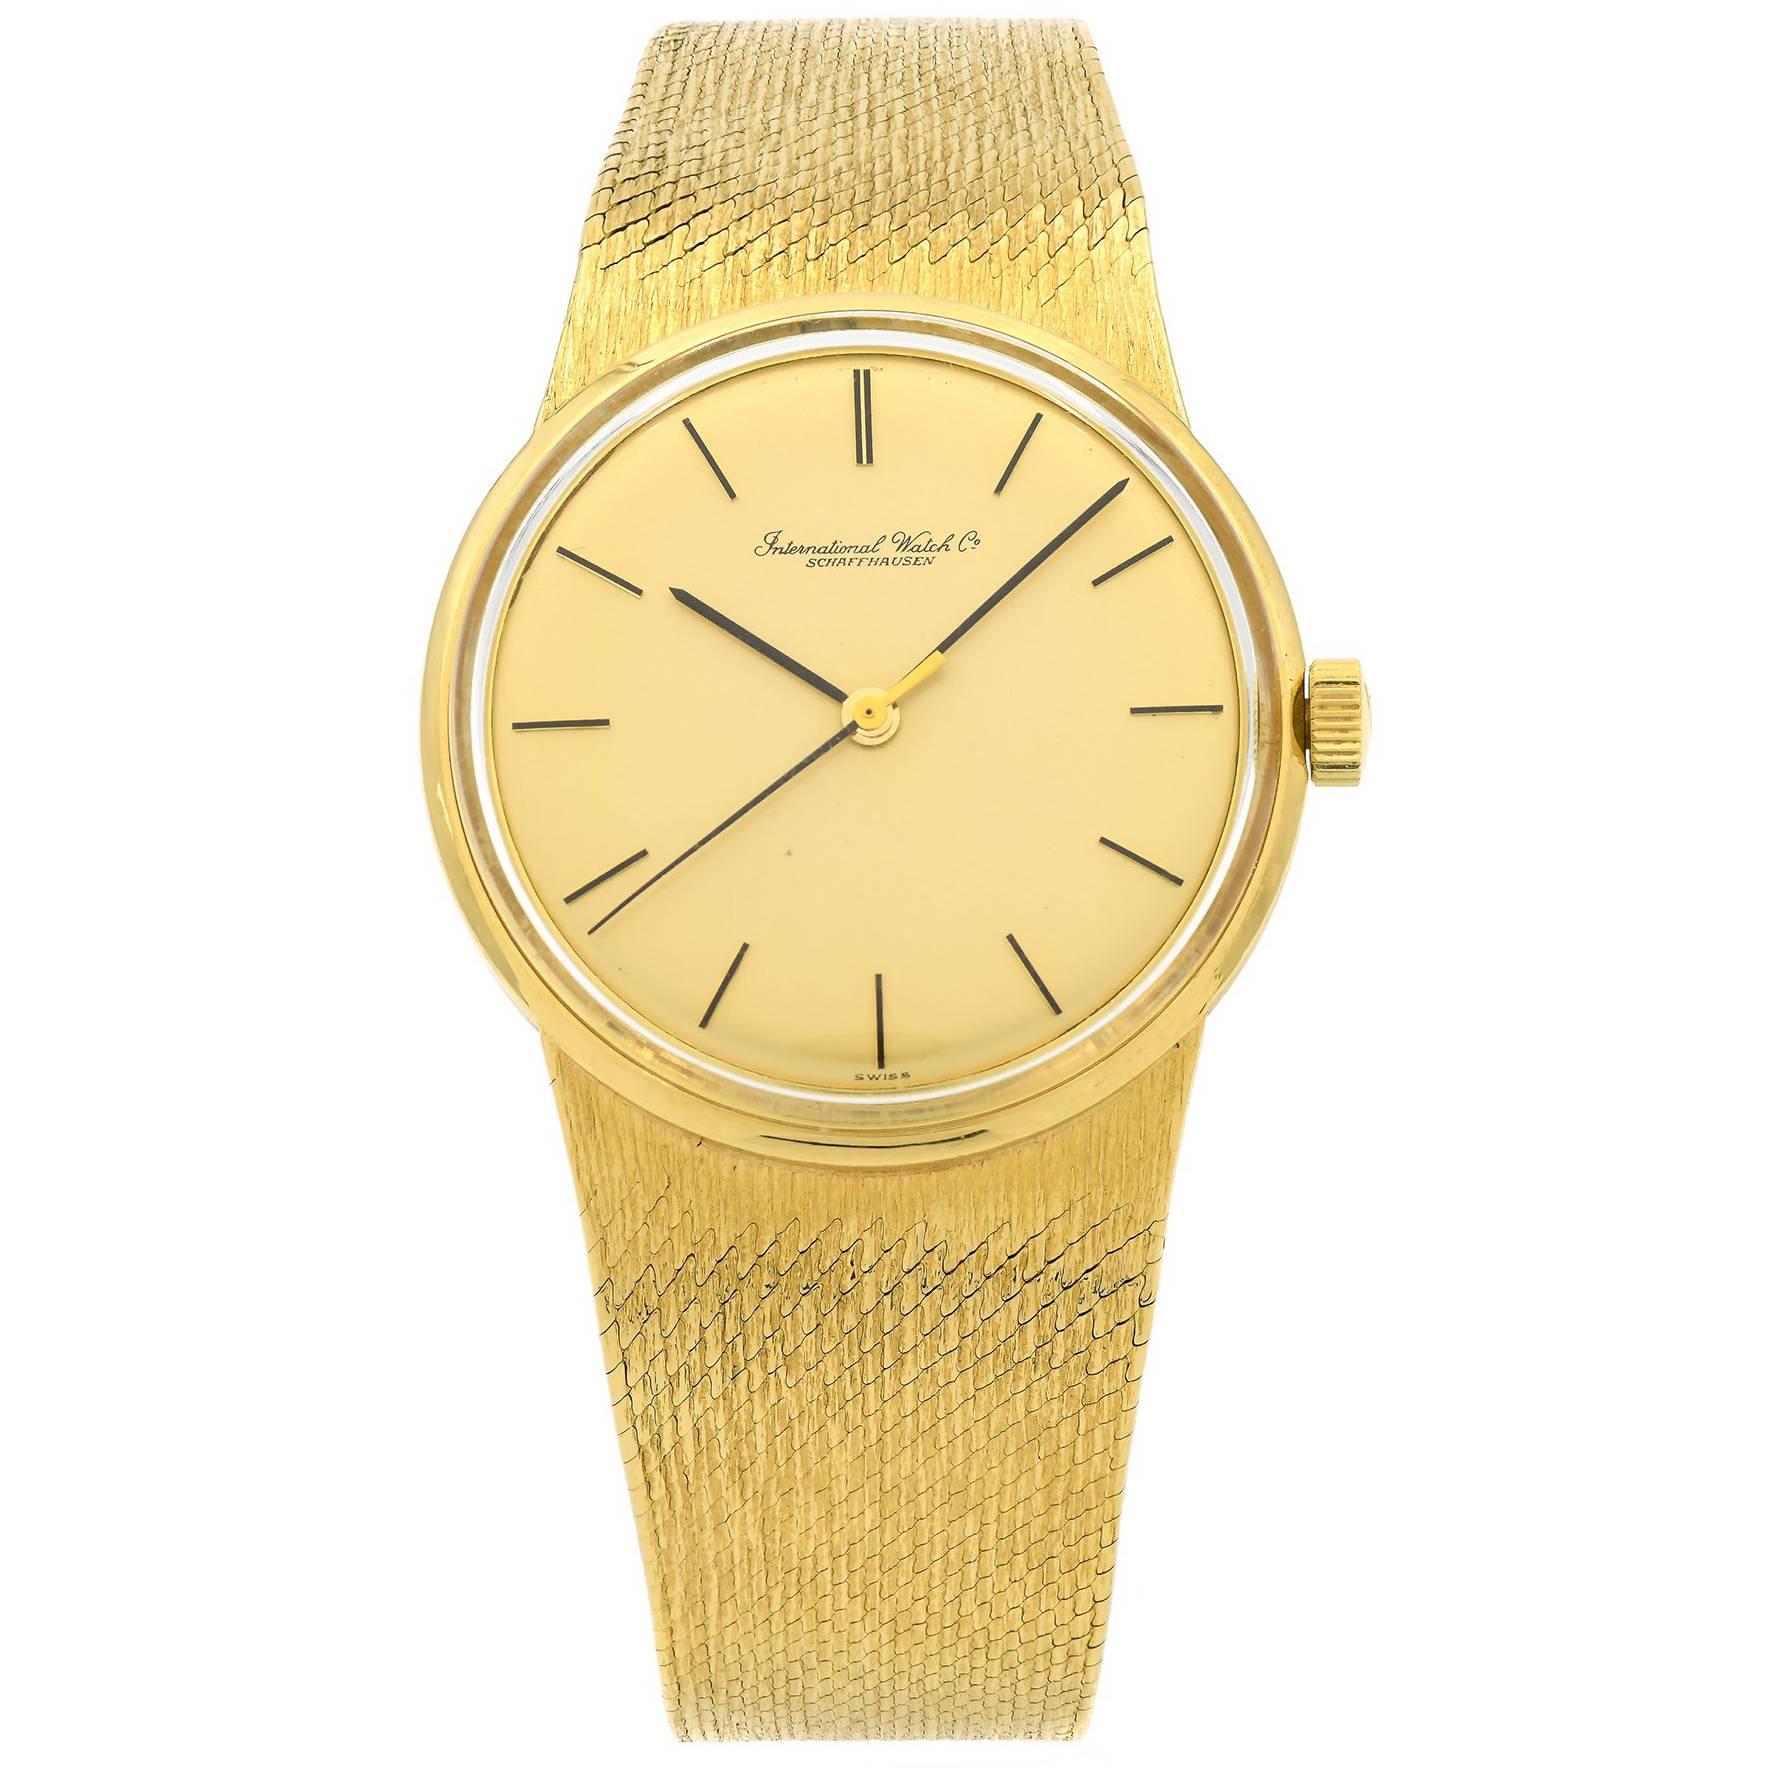 International Watch Co. yellow Gold Mesh Band Dress Manual Wind Wristwatch 